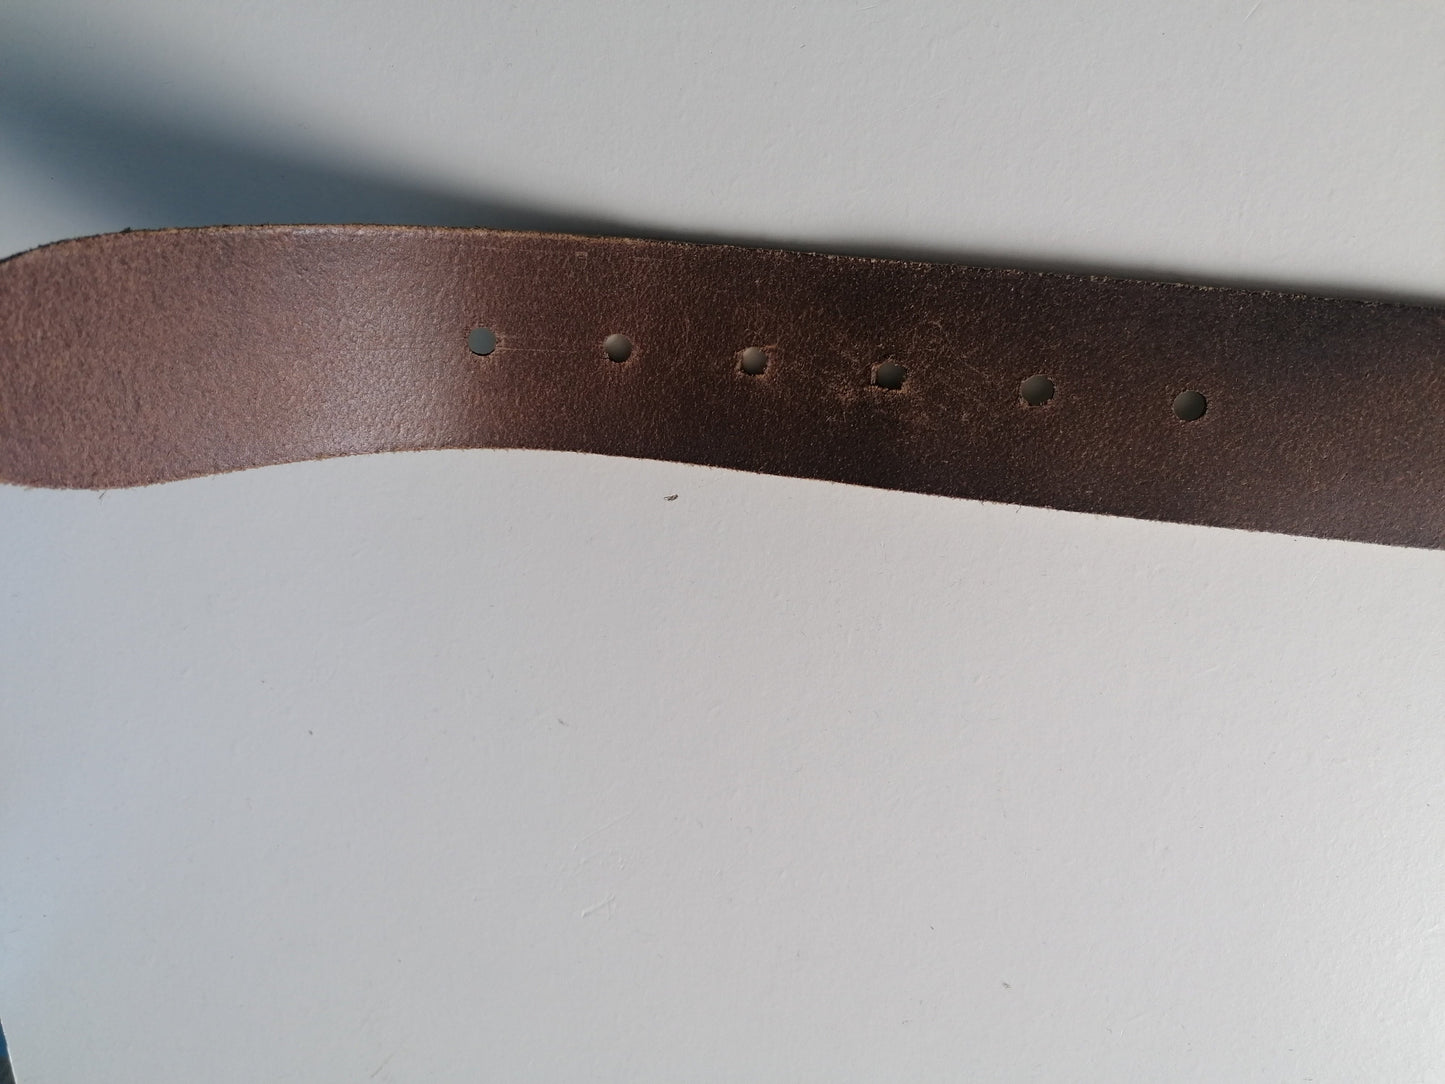 Cinturón de cuero con hebilla. Color blanco marrón. 95 - 110 cm.